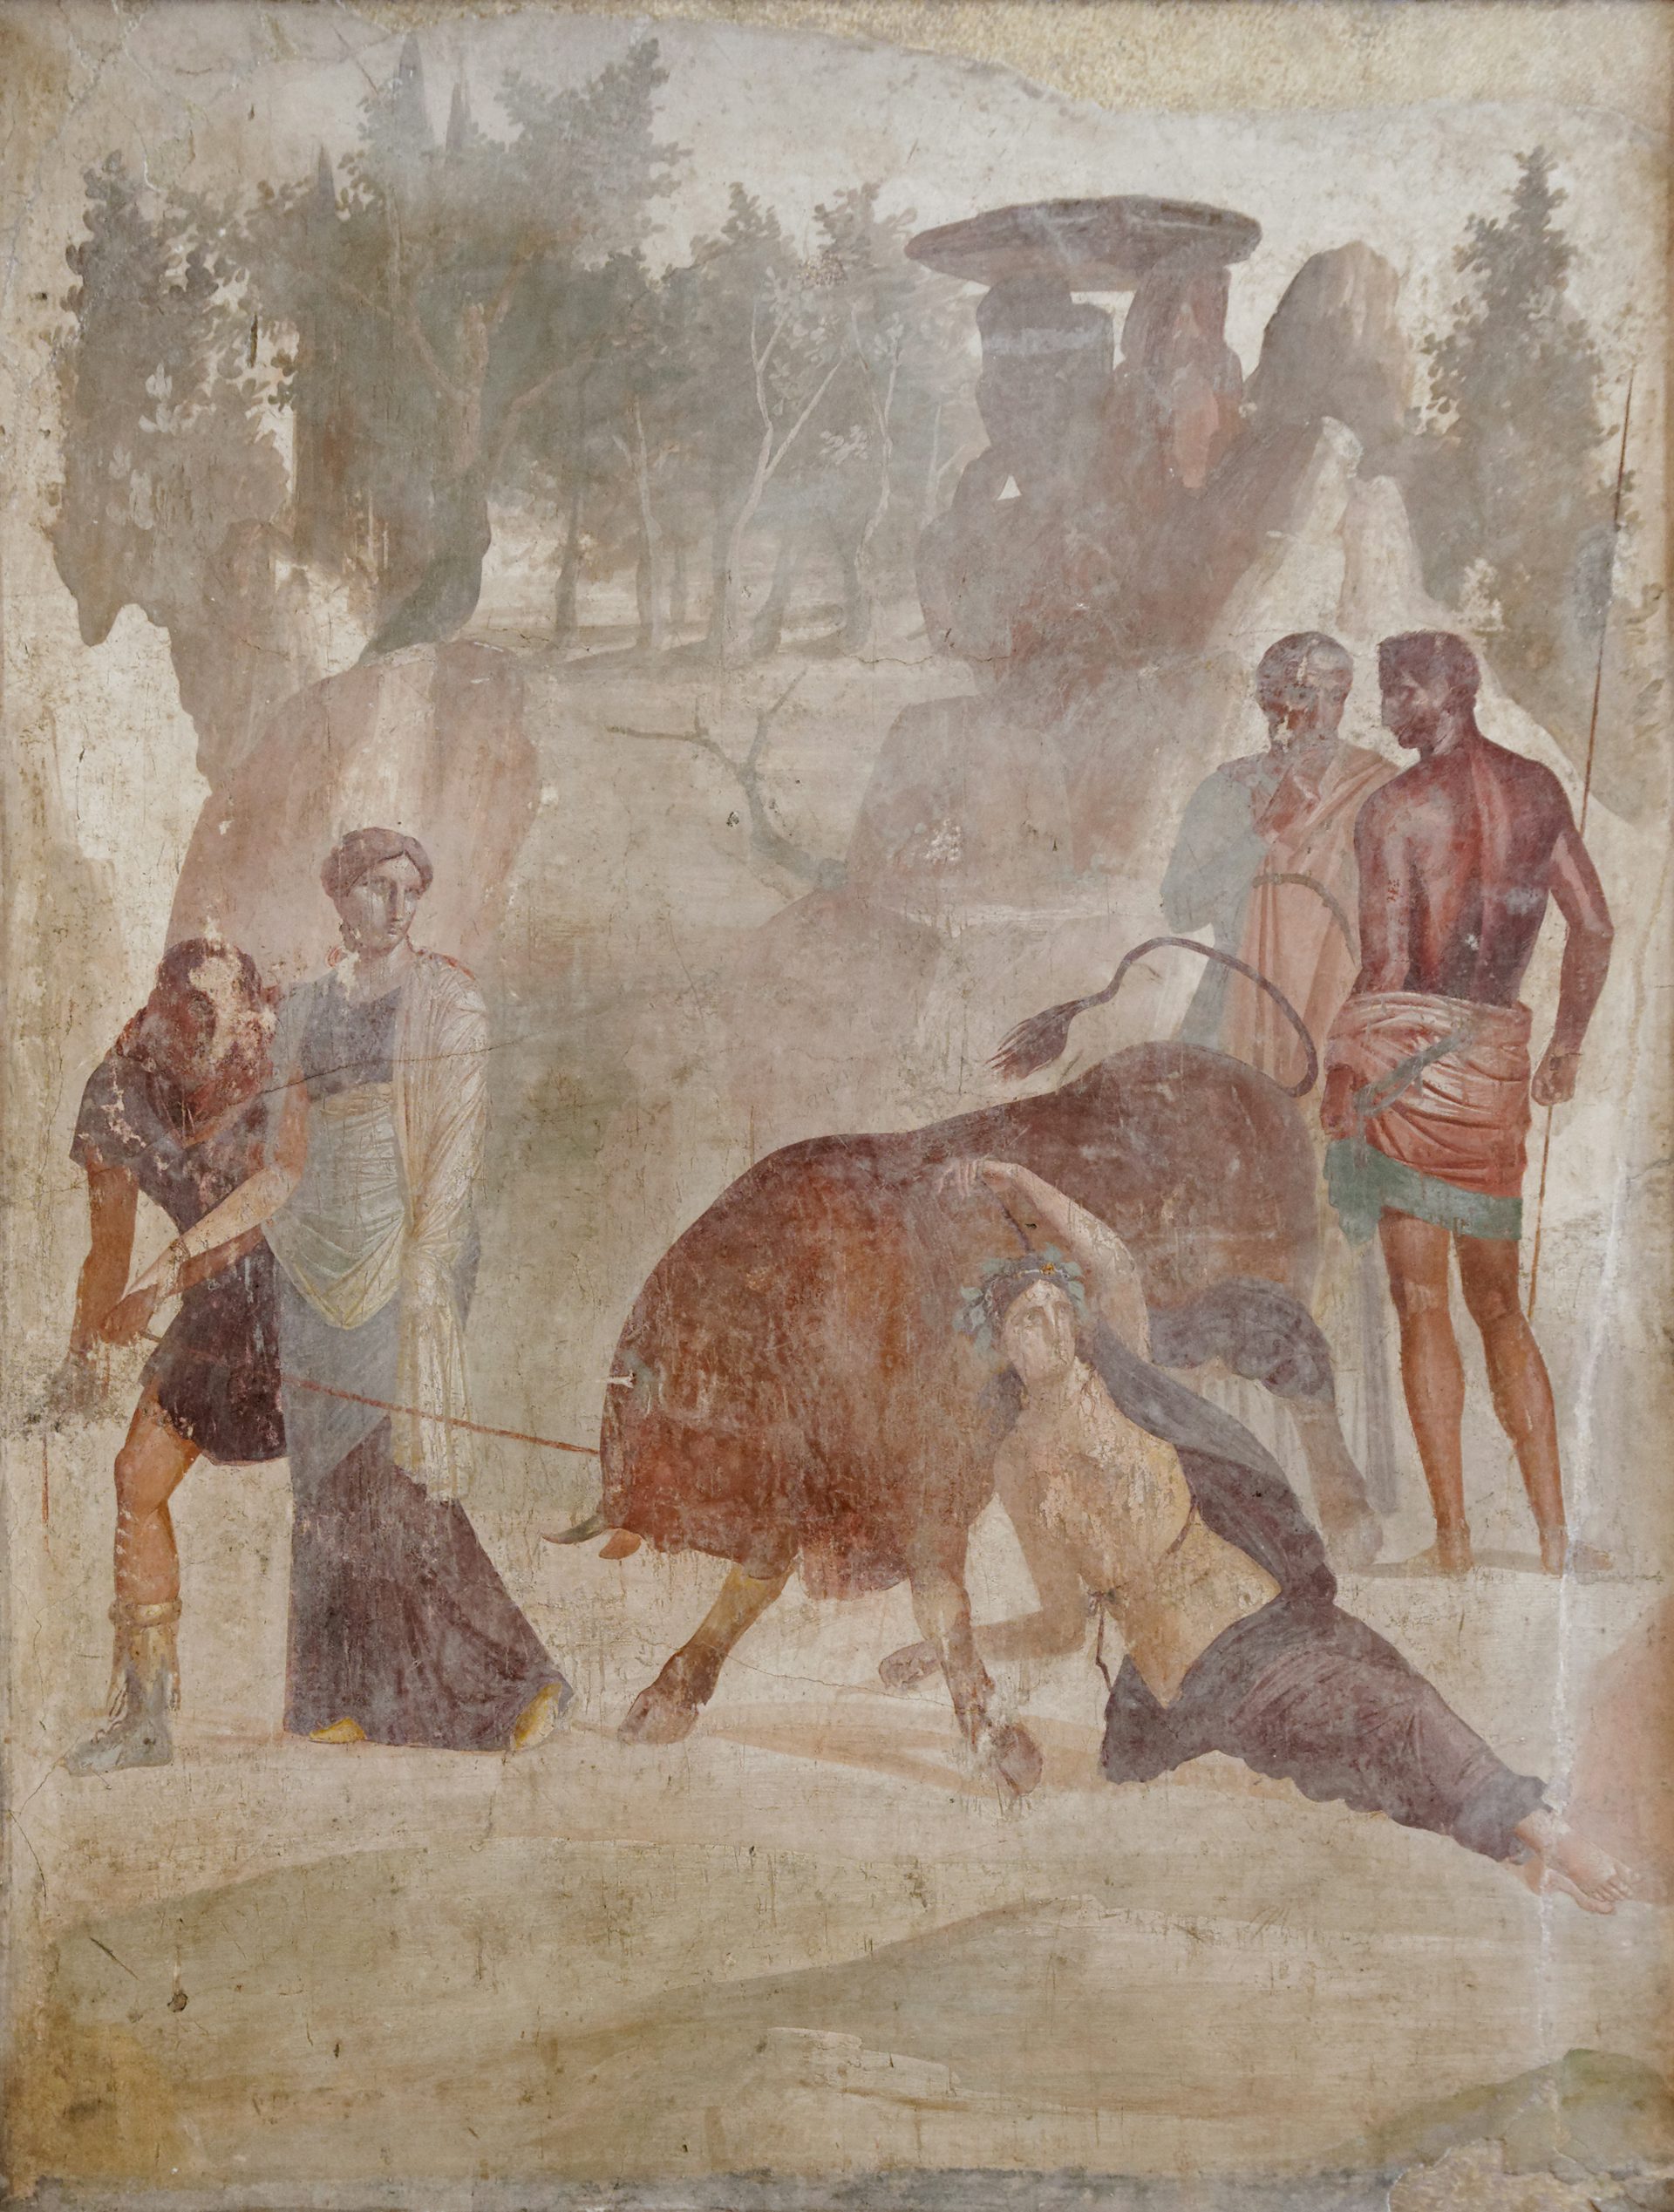 Fresco of Amphion and Zethus punishing Dirce